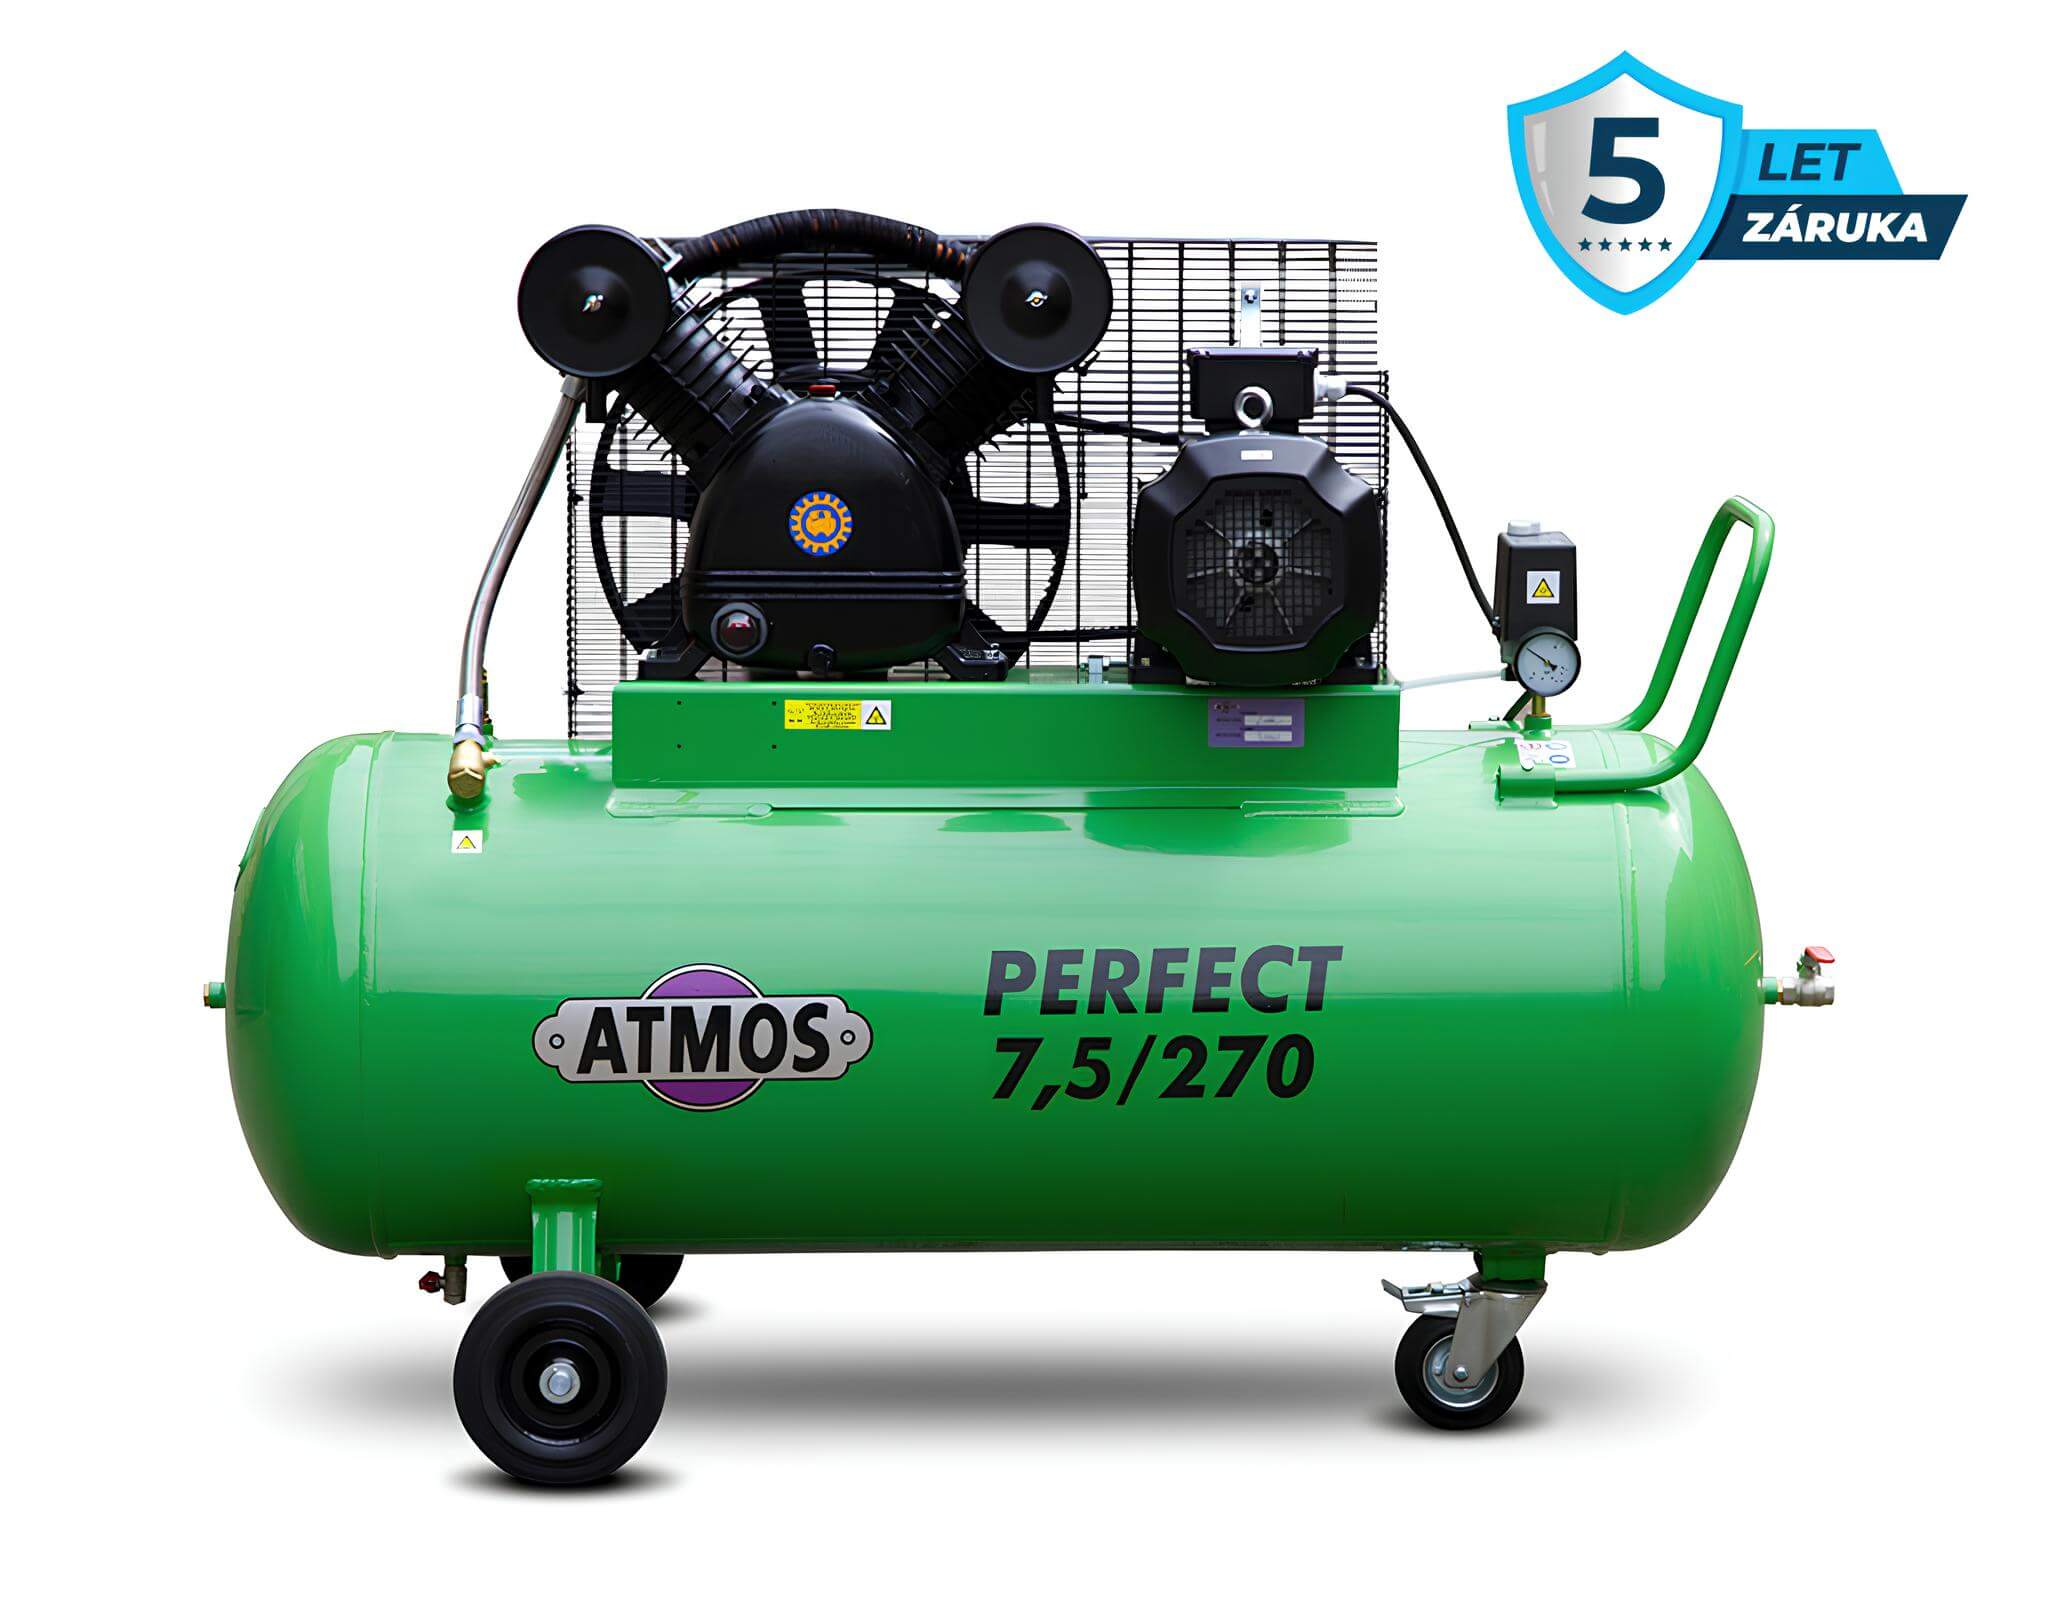 Atmos Pístový kompresor Perfect - 7,5/270 příkon 7,5 kW, výkon 920 l/min, tlak 10 bar, vzdušník 270 l, napětí 400/50 V/Hz